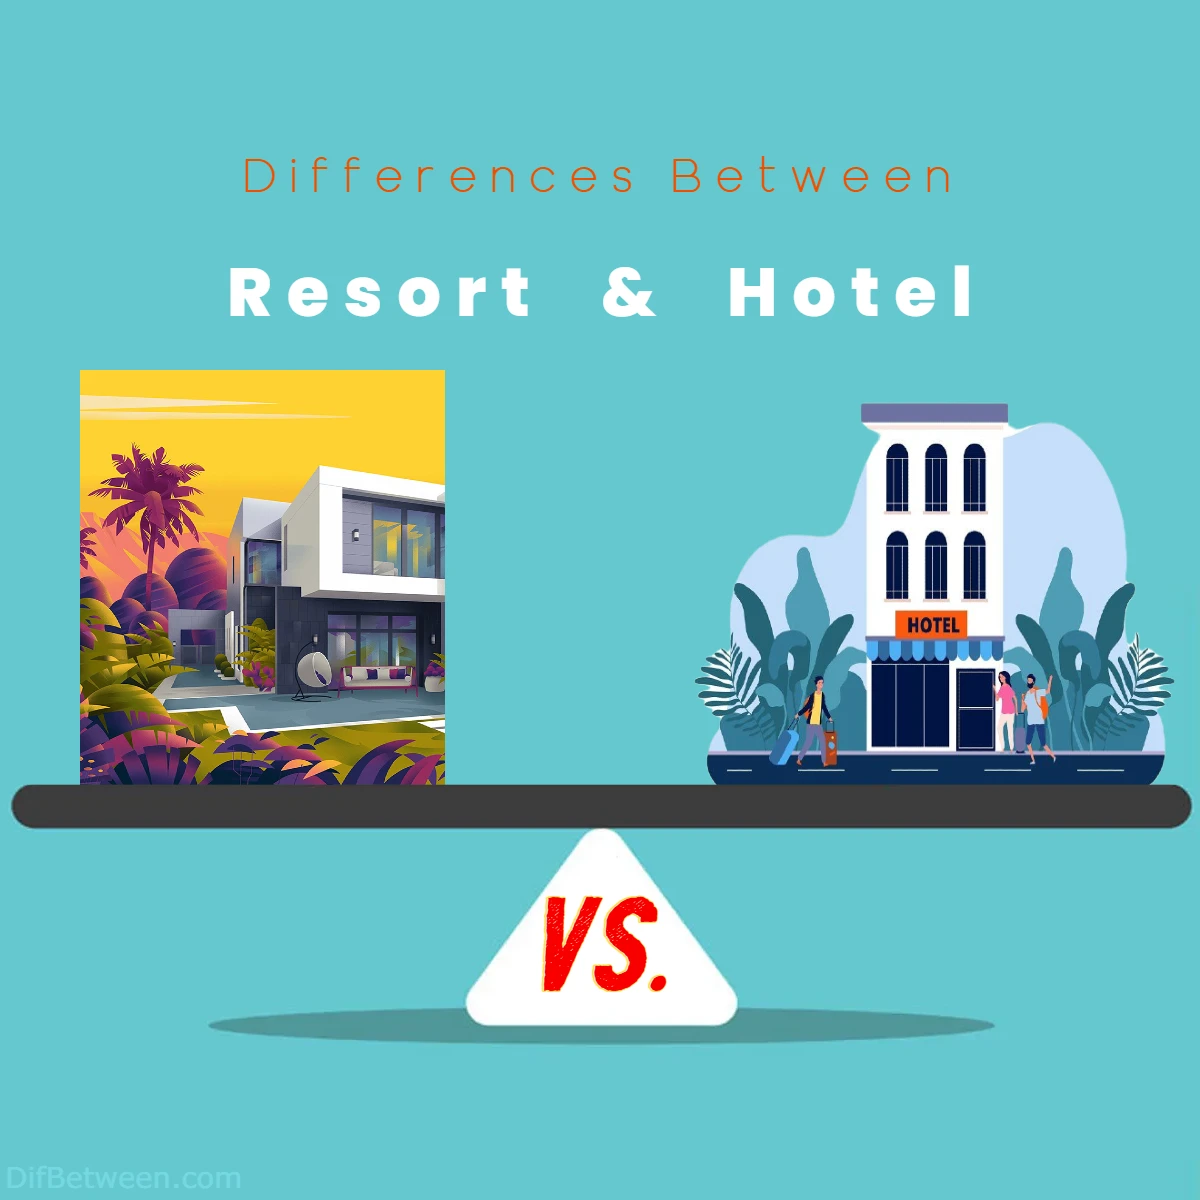 Differences Between Resort vs Hotel